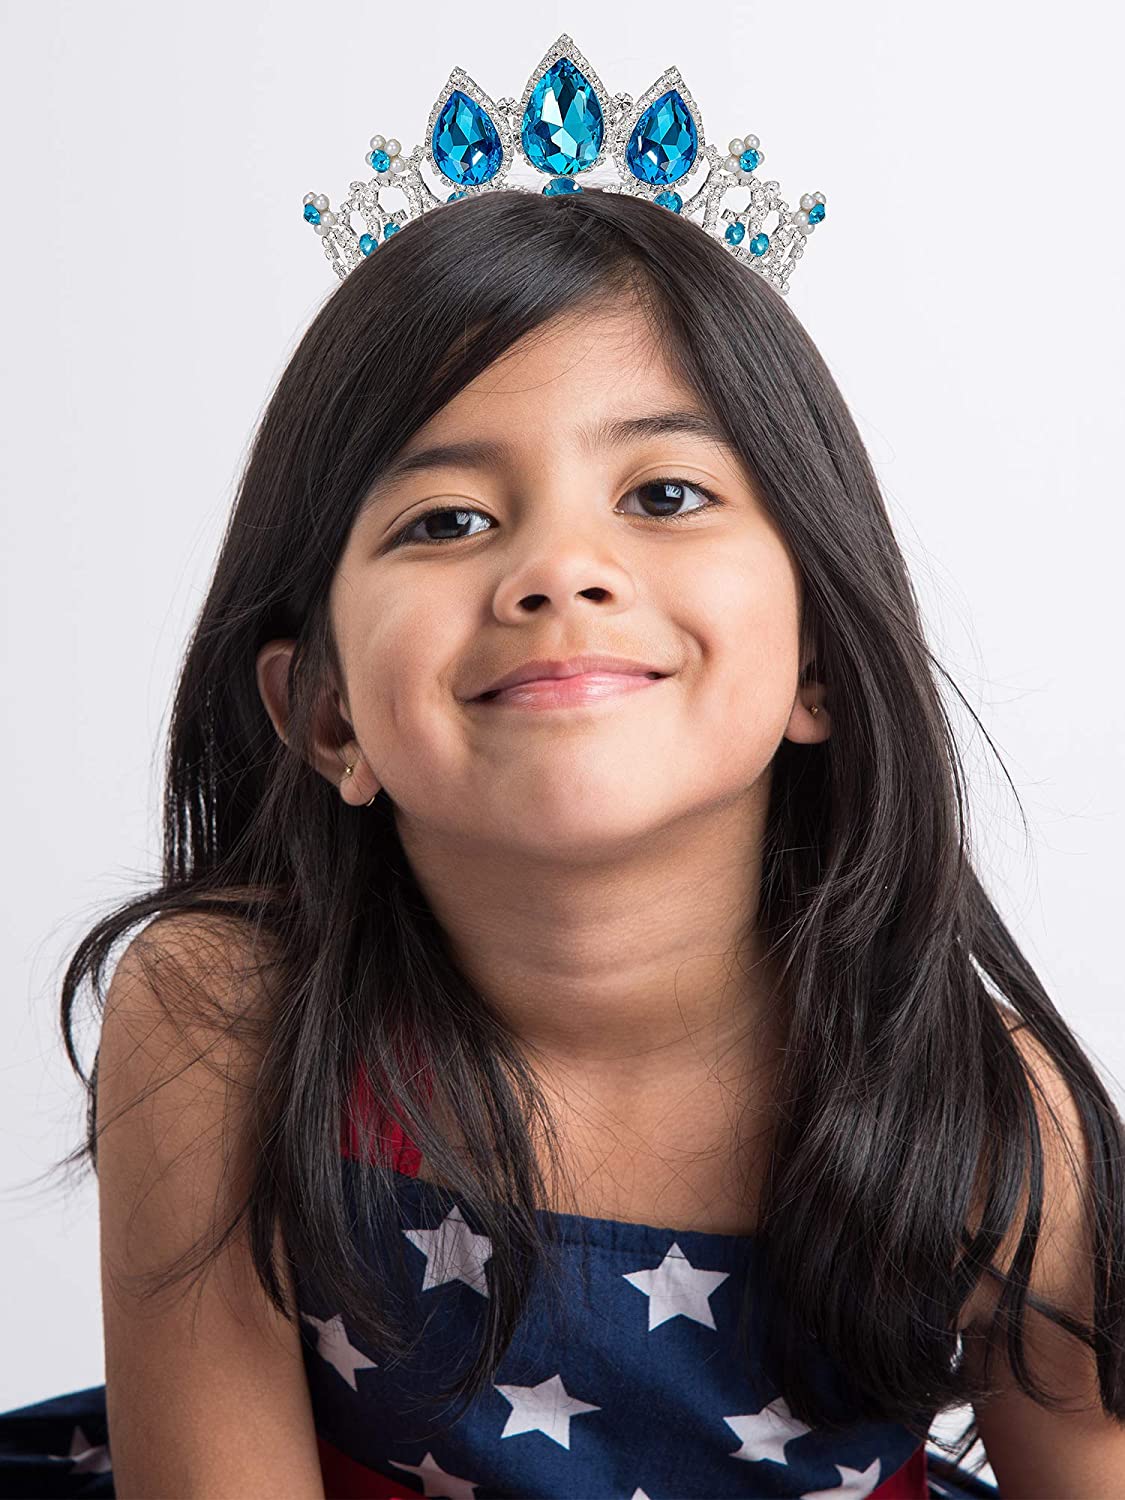 Princess Tiaras for Little Girls - Uporpor